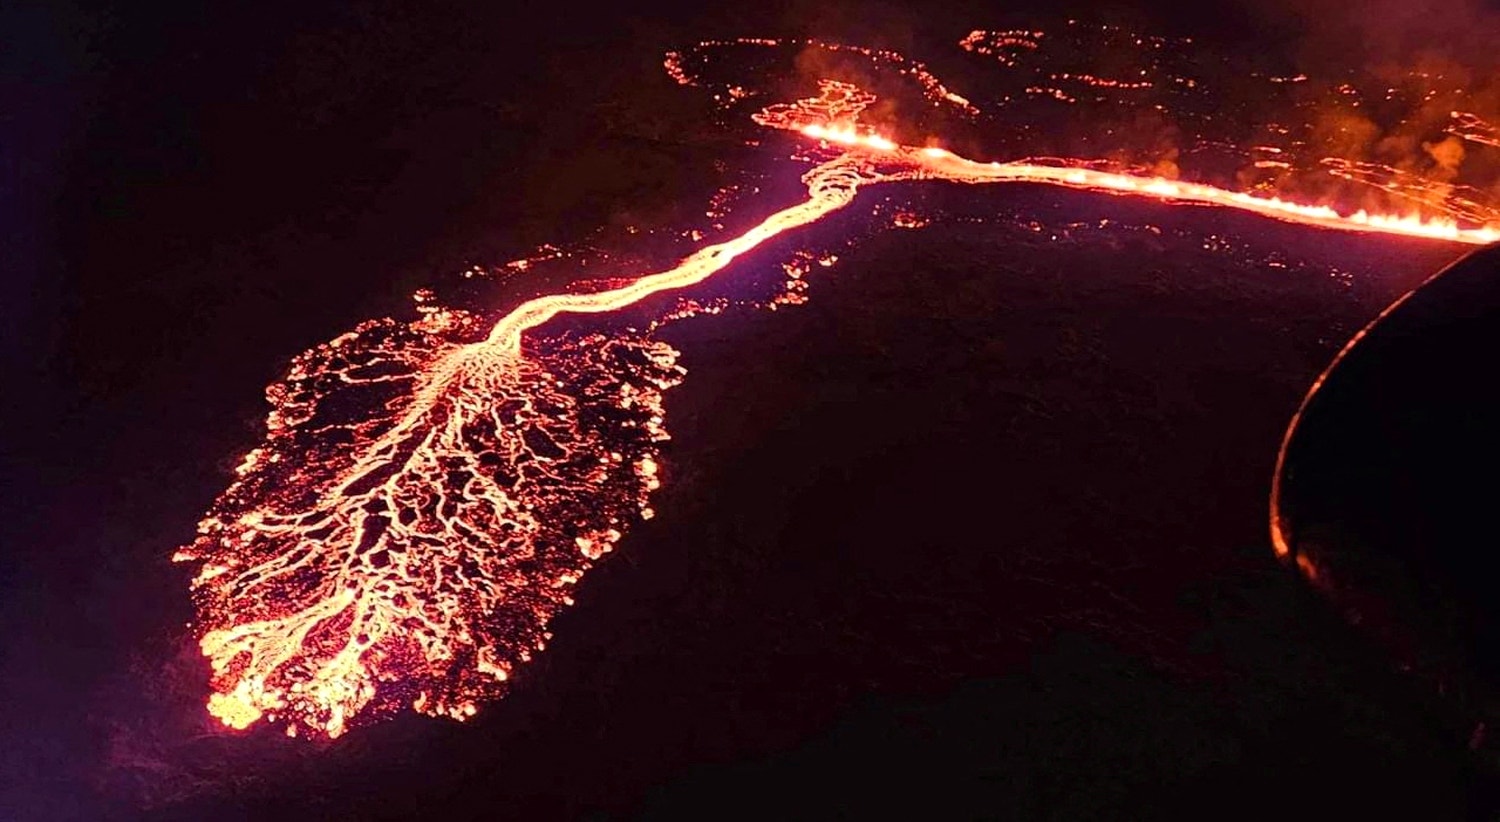  Um vulc&atilde;o expele lava e fumo ao entrar em erup&ccedil;&atilde;o perto de Grindavik, Isl&acirc;ndia, 19 de dezembro | Prote&ccedil;&atilde;o Civil da Isl&acirc;ndia via Reuters 